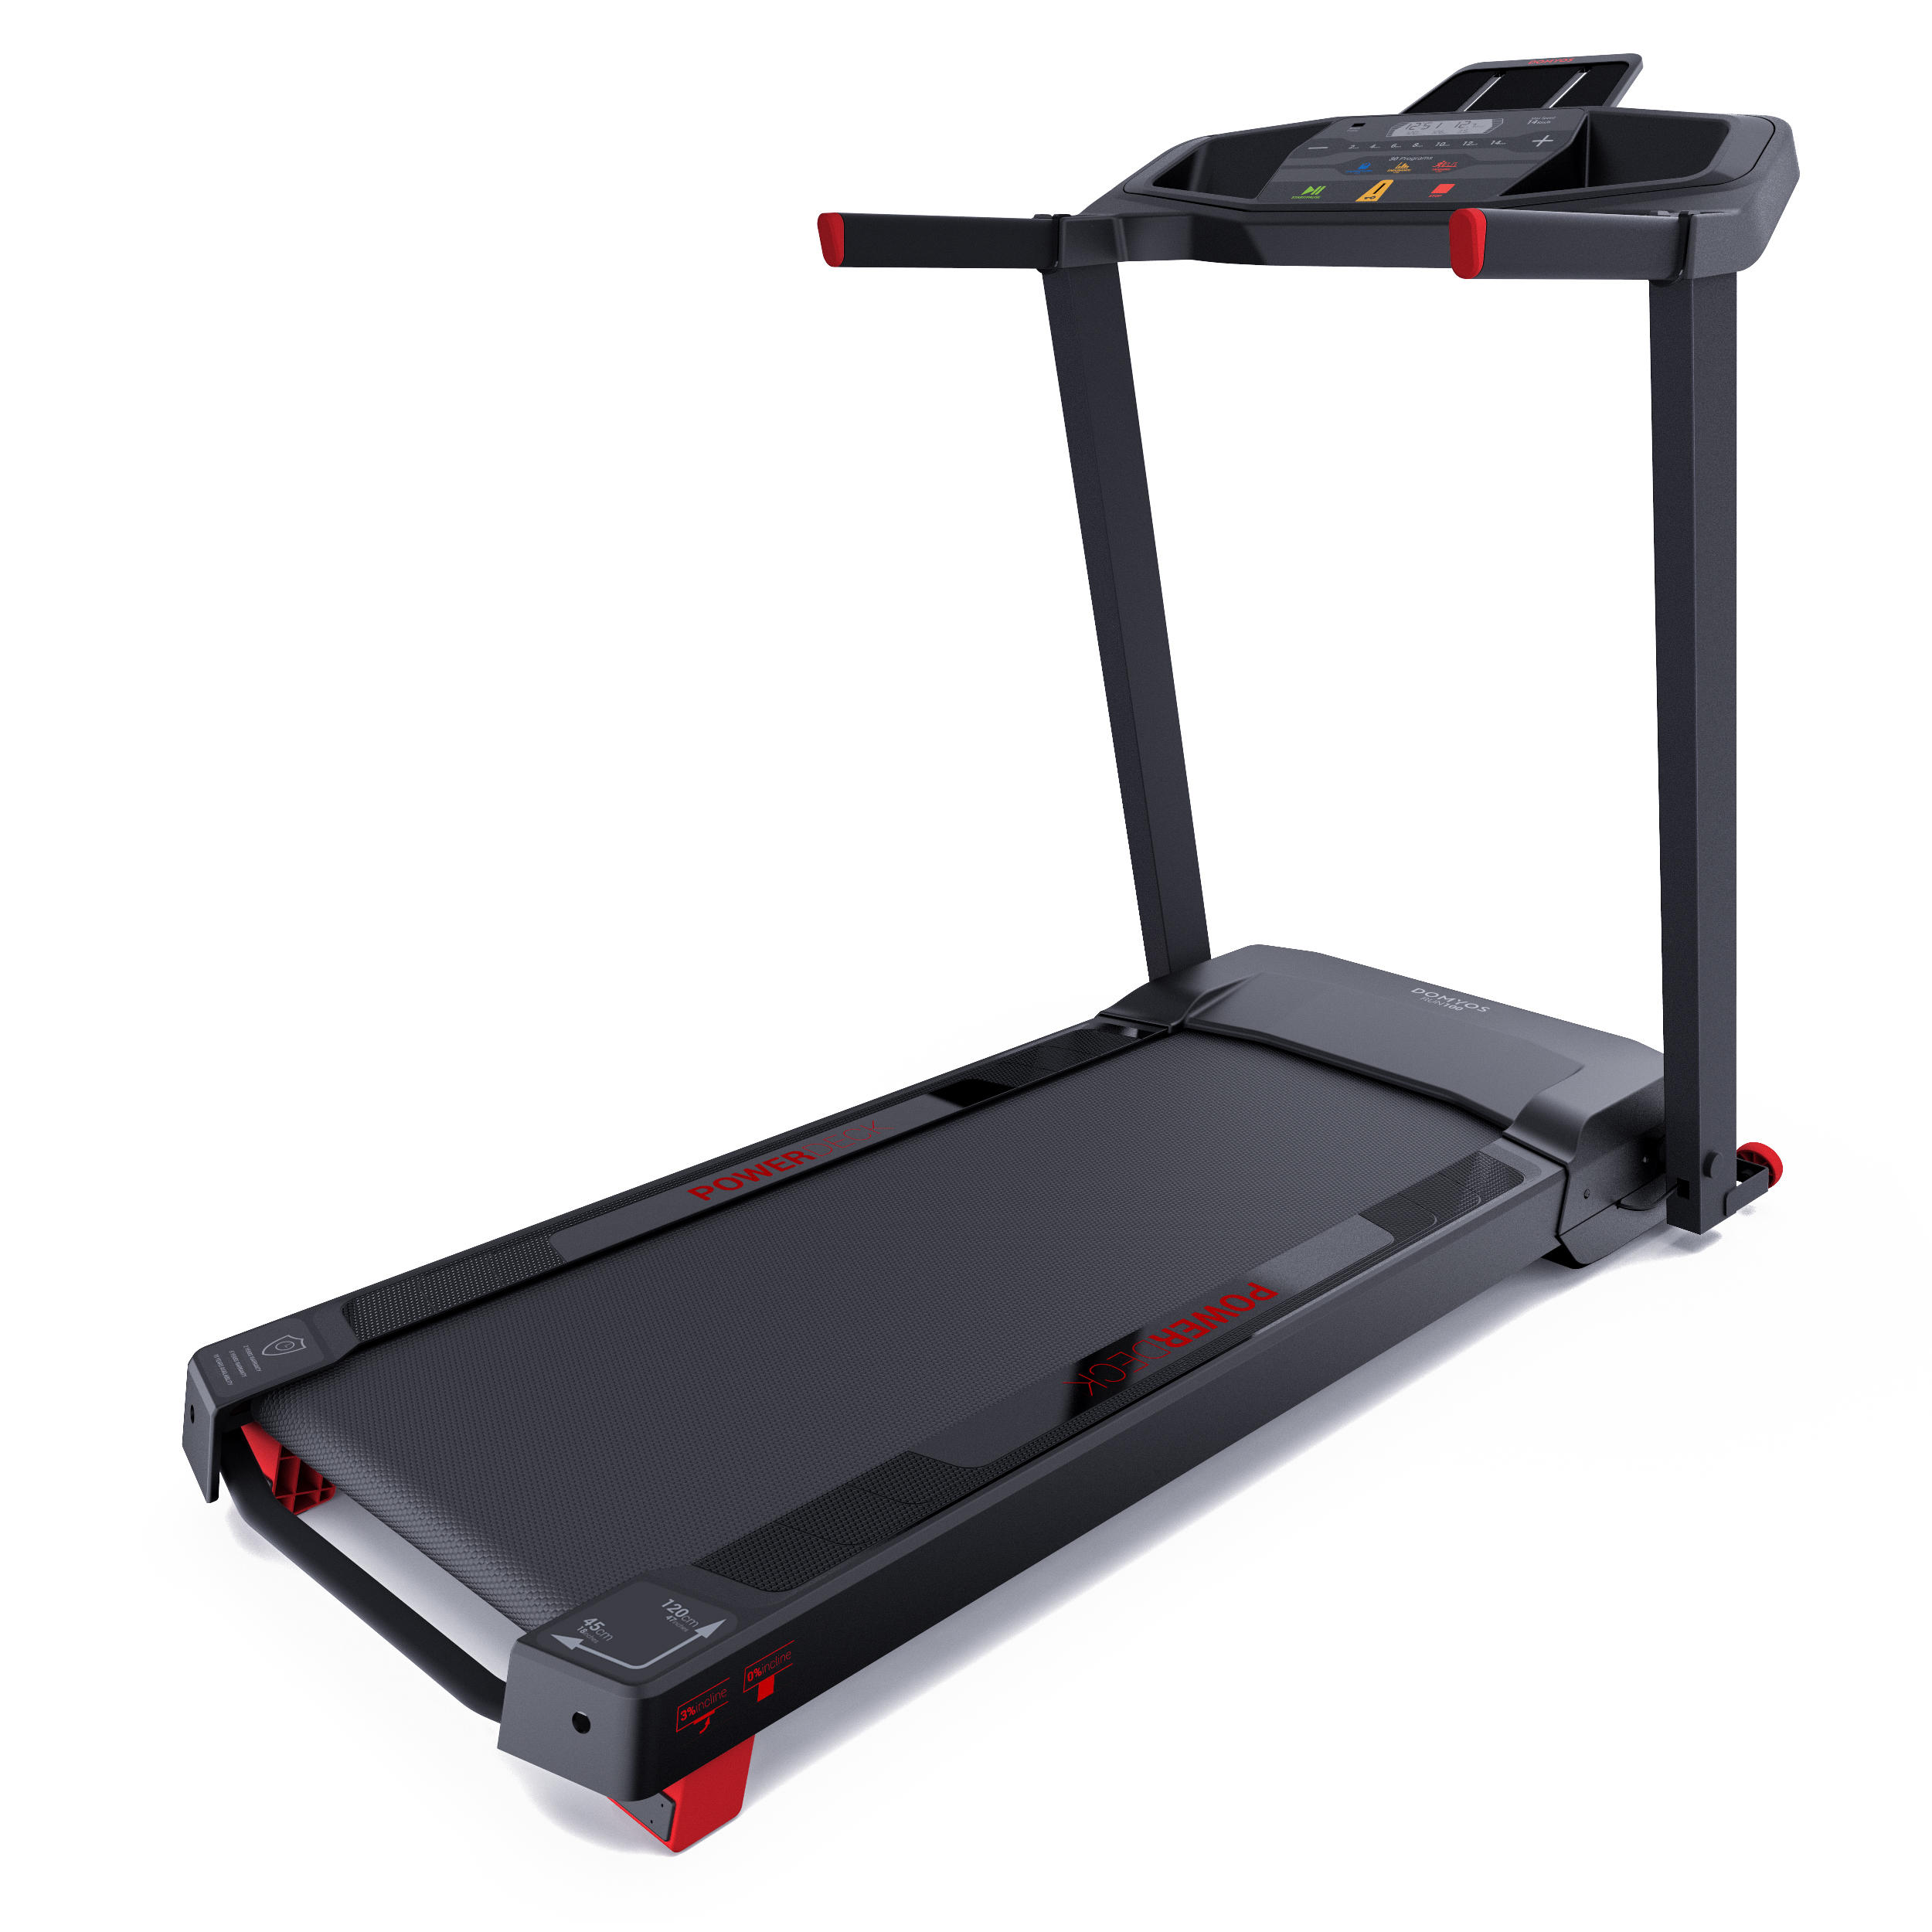 decathlon treadmill